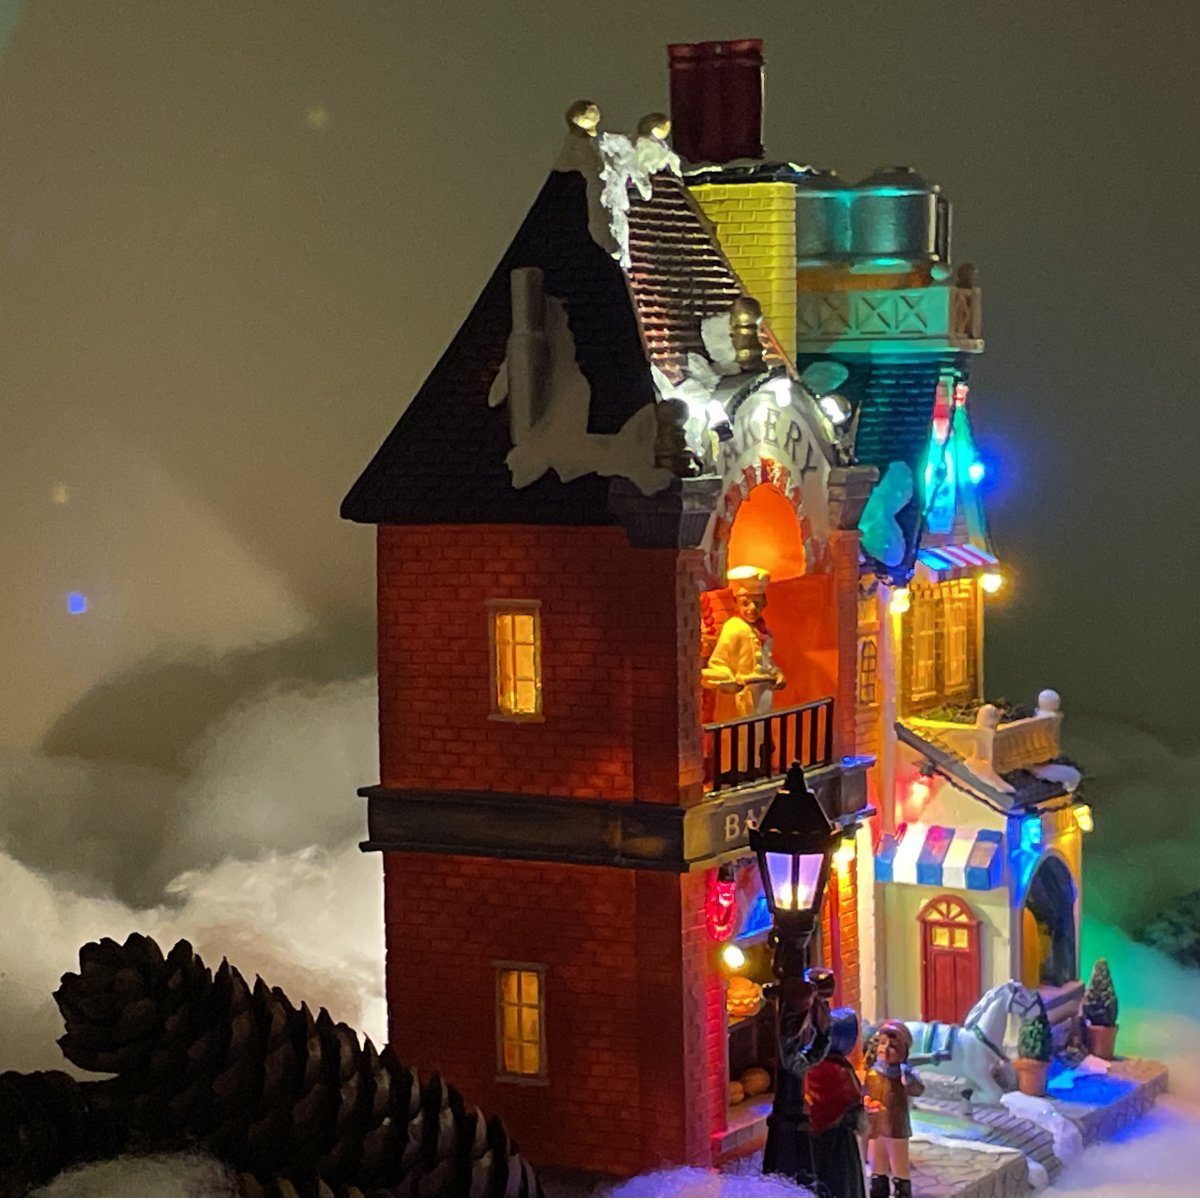 Weihnachtsbaum sich Beleuchtung,Musik e4fun drehenden Weihnachtsdorf Bäckerei und LED